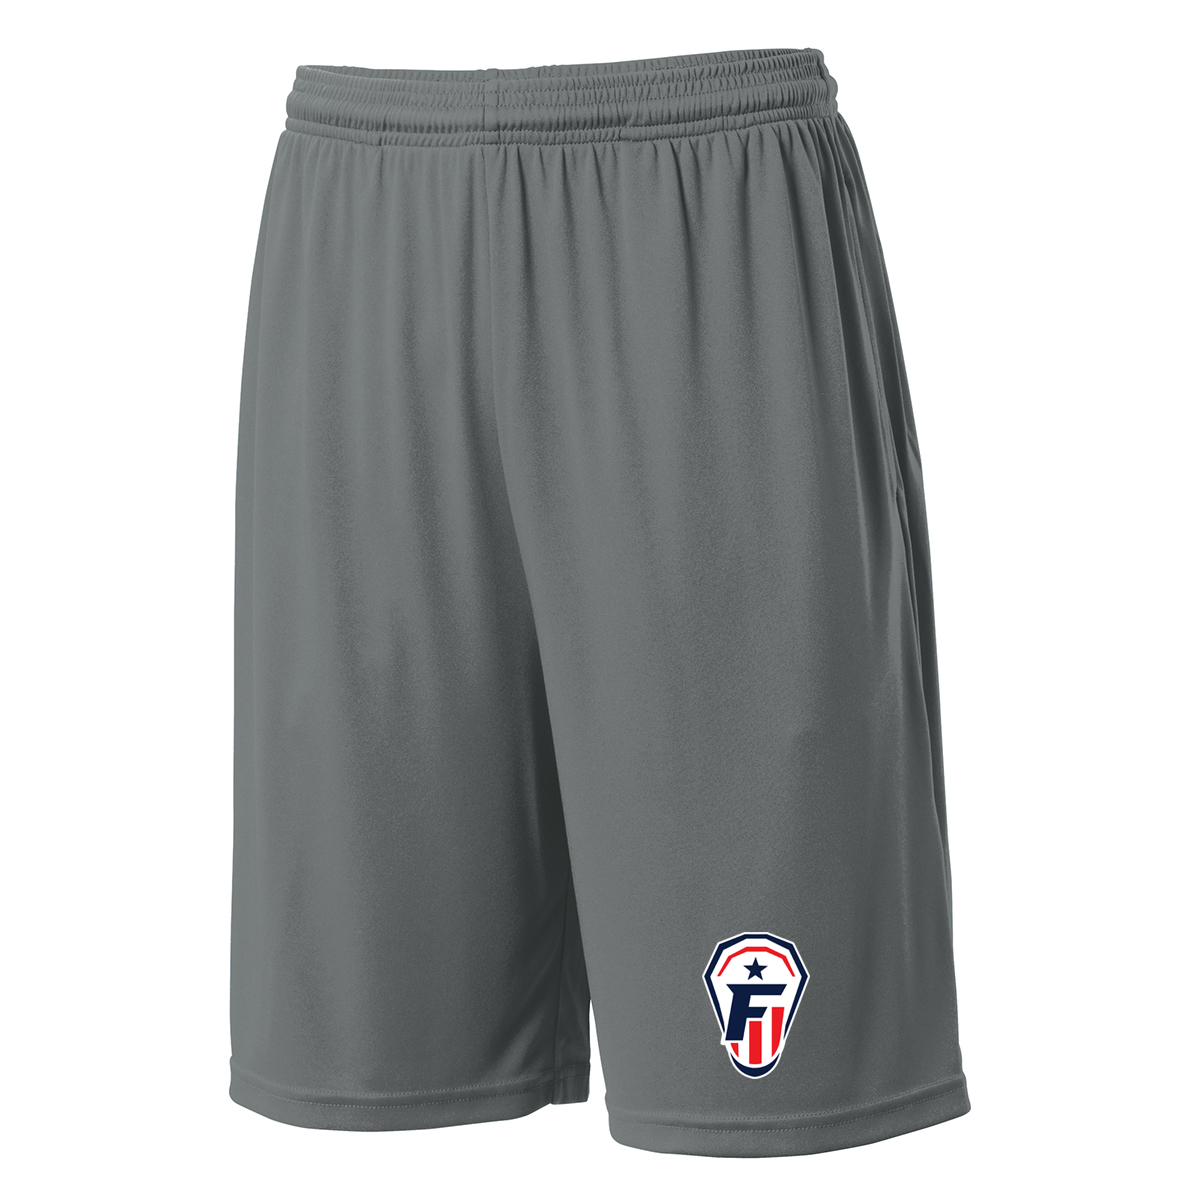 Freedom Lacrosse Grey Shorts